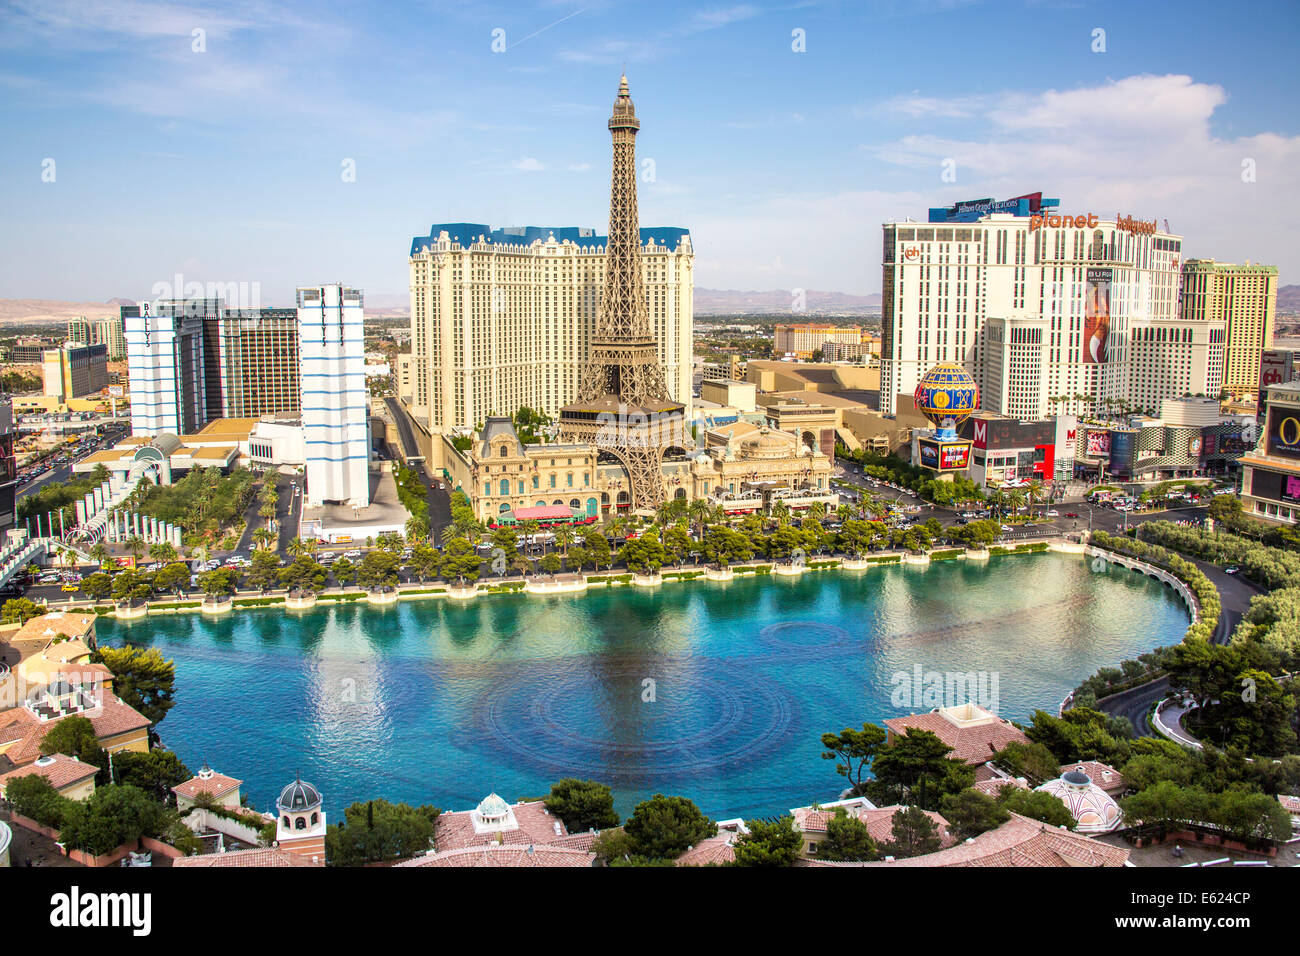 Vista dall'hotel Bellagio, Las Vegas, Nevada, Stati Uniti Foto Stock